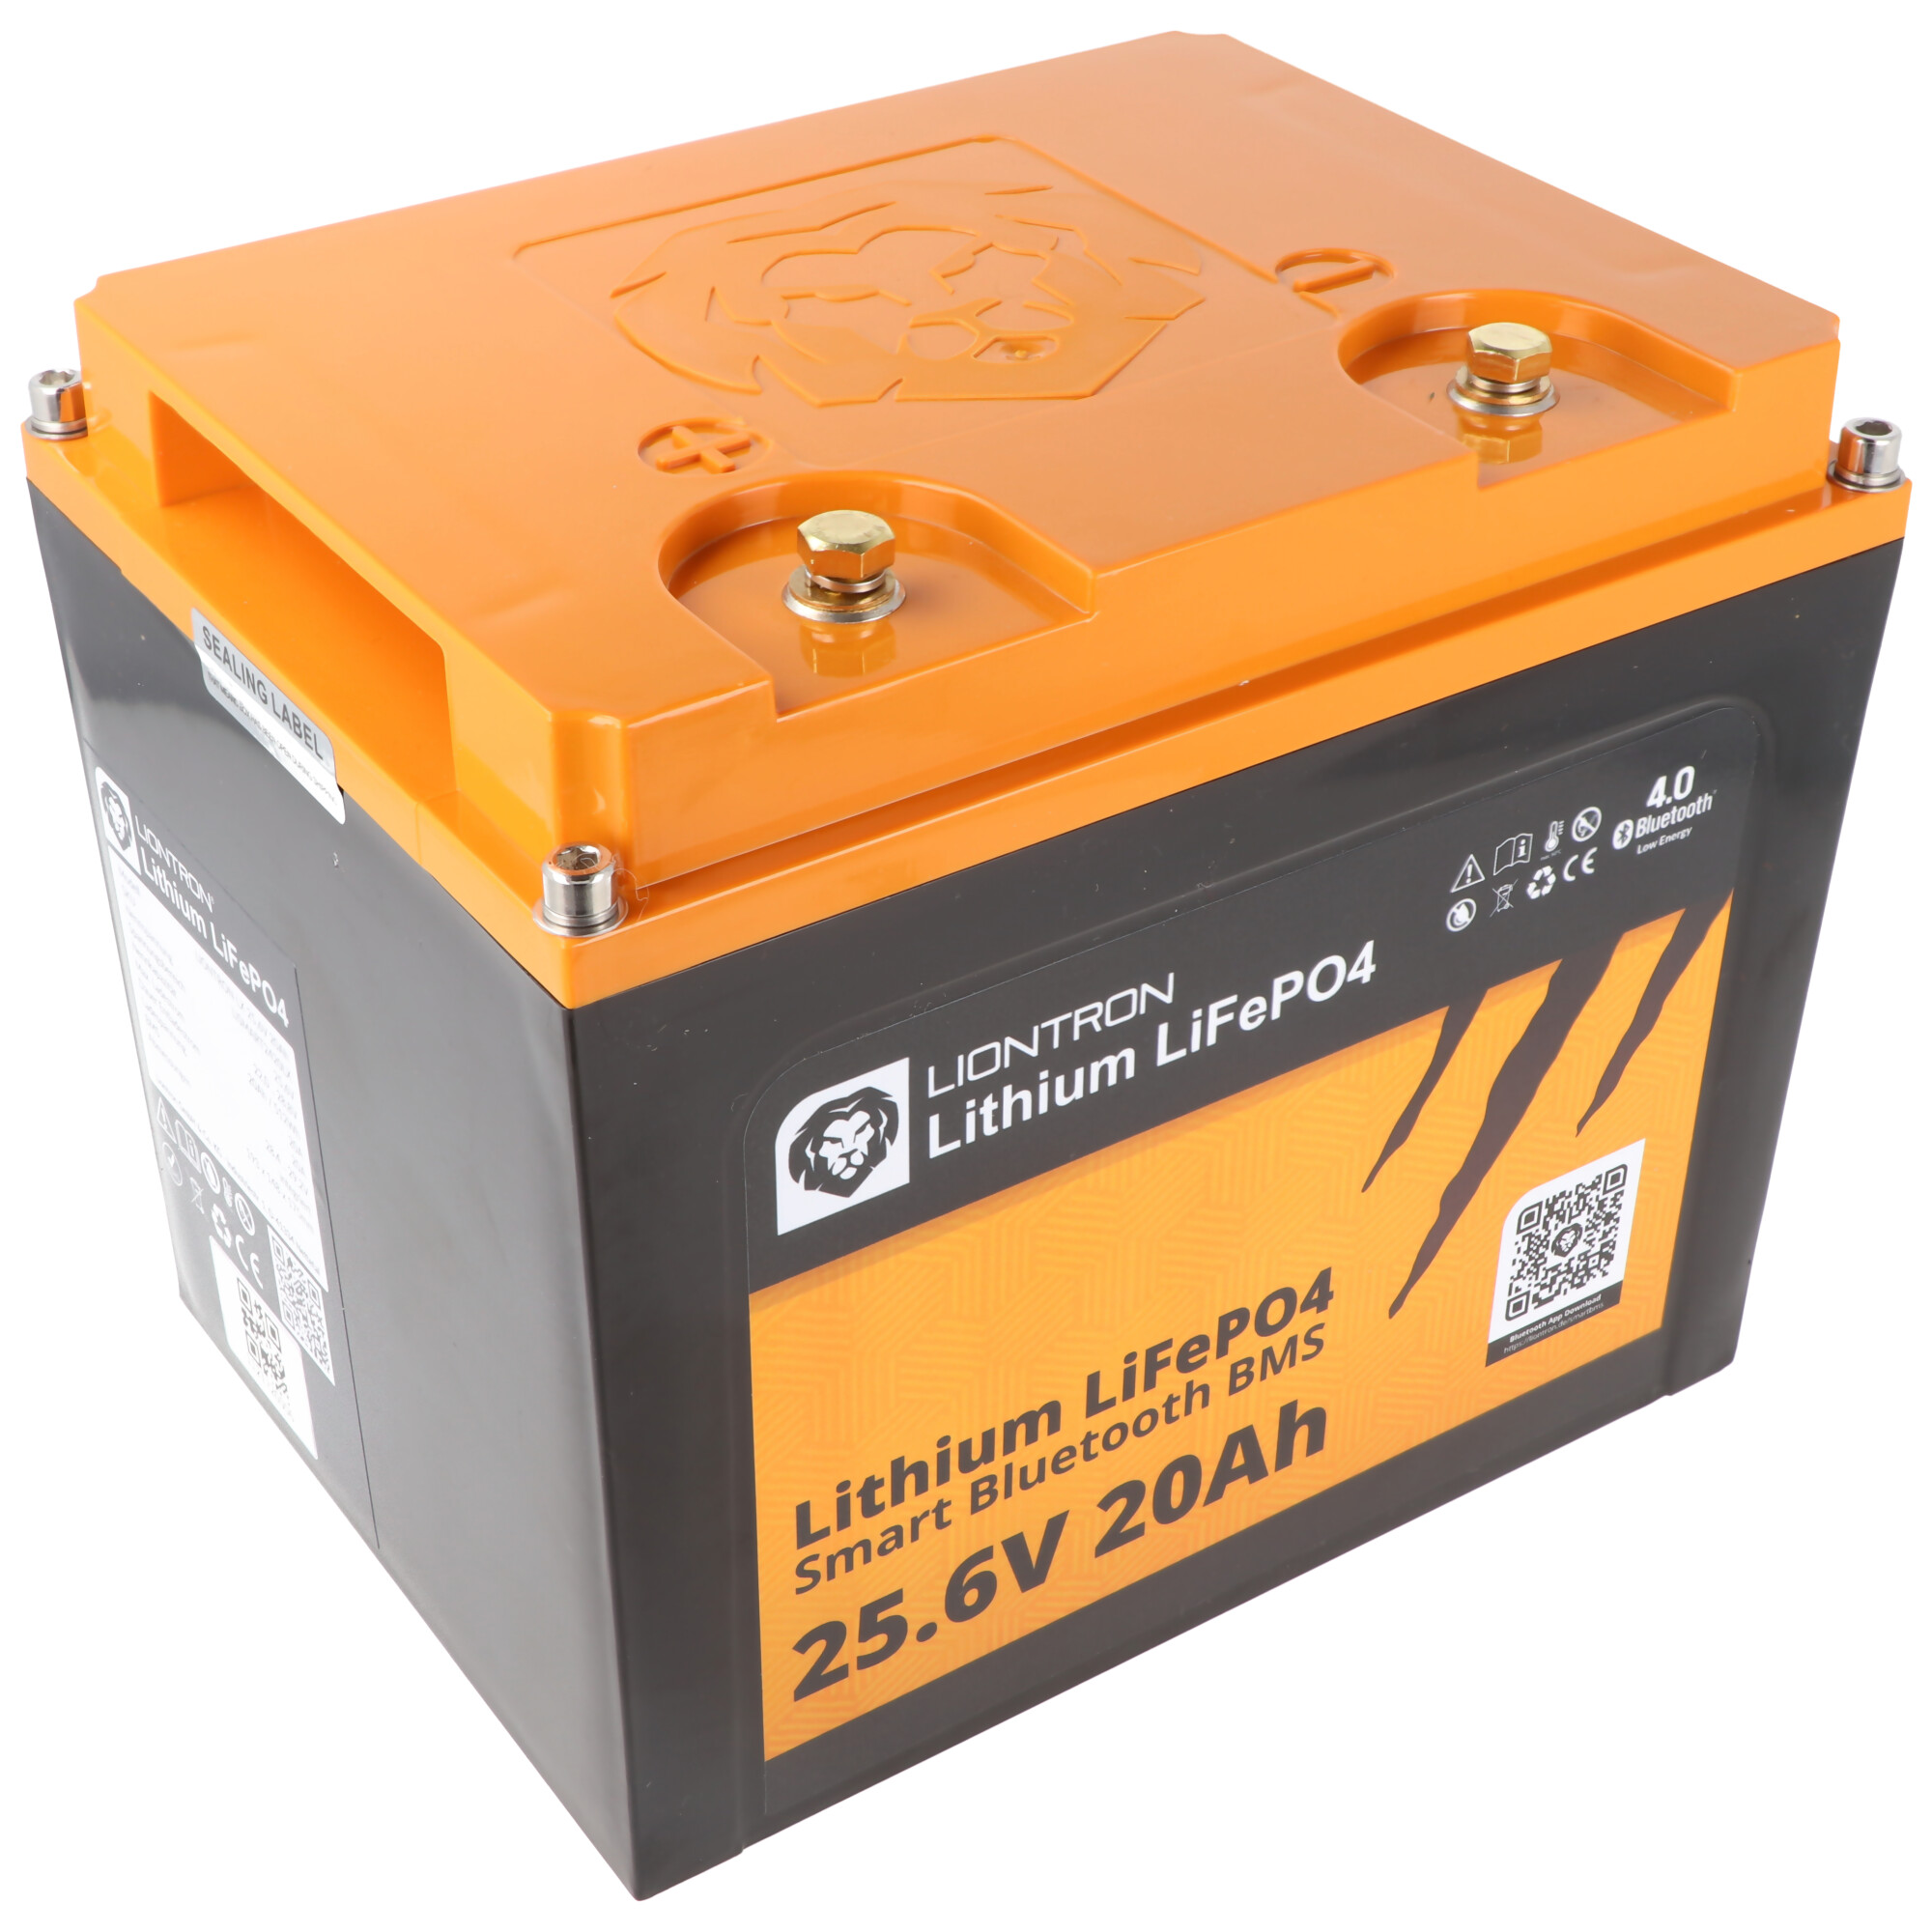 Batterie LIONTRON LiFePO4 Smart BMS 25.6V, 20Ah - remplacement